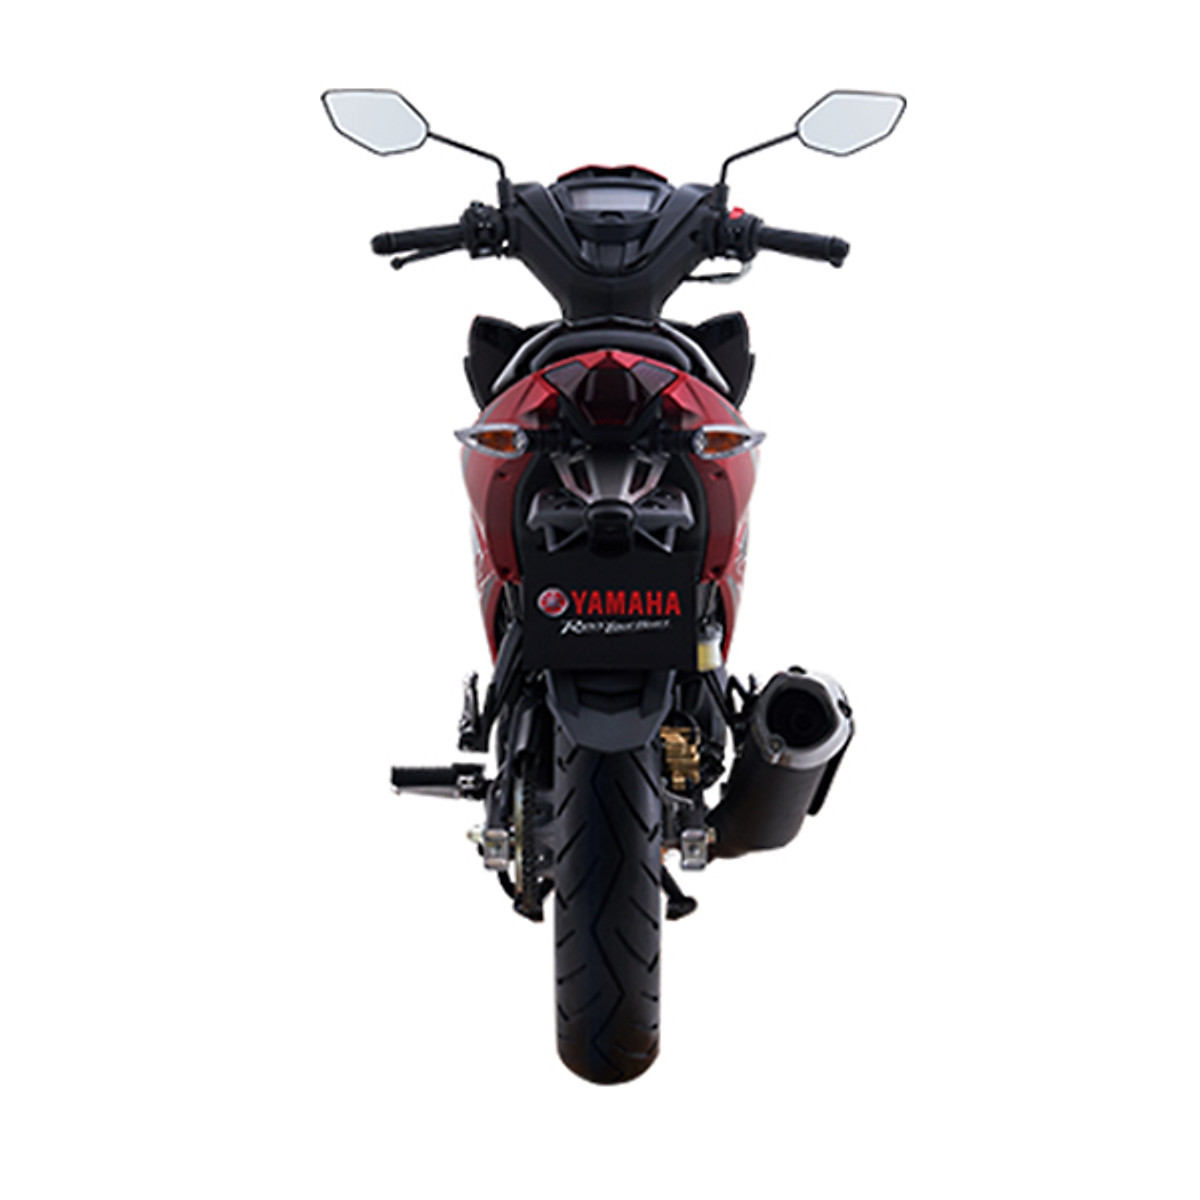 Phát thèm với Yamaha Exciter 150 2019 màu đỏ nhám tuyệt đẹp giá từ 47 triệu